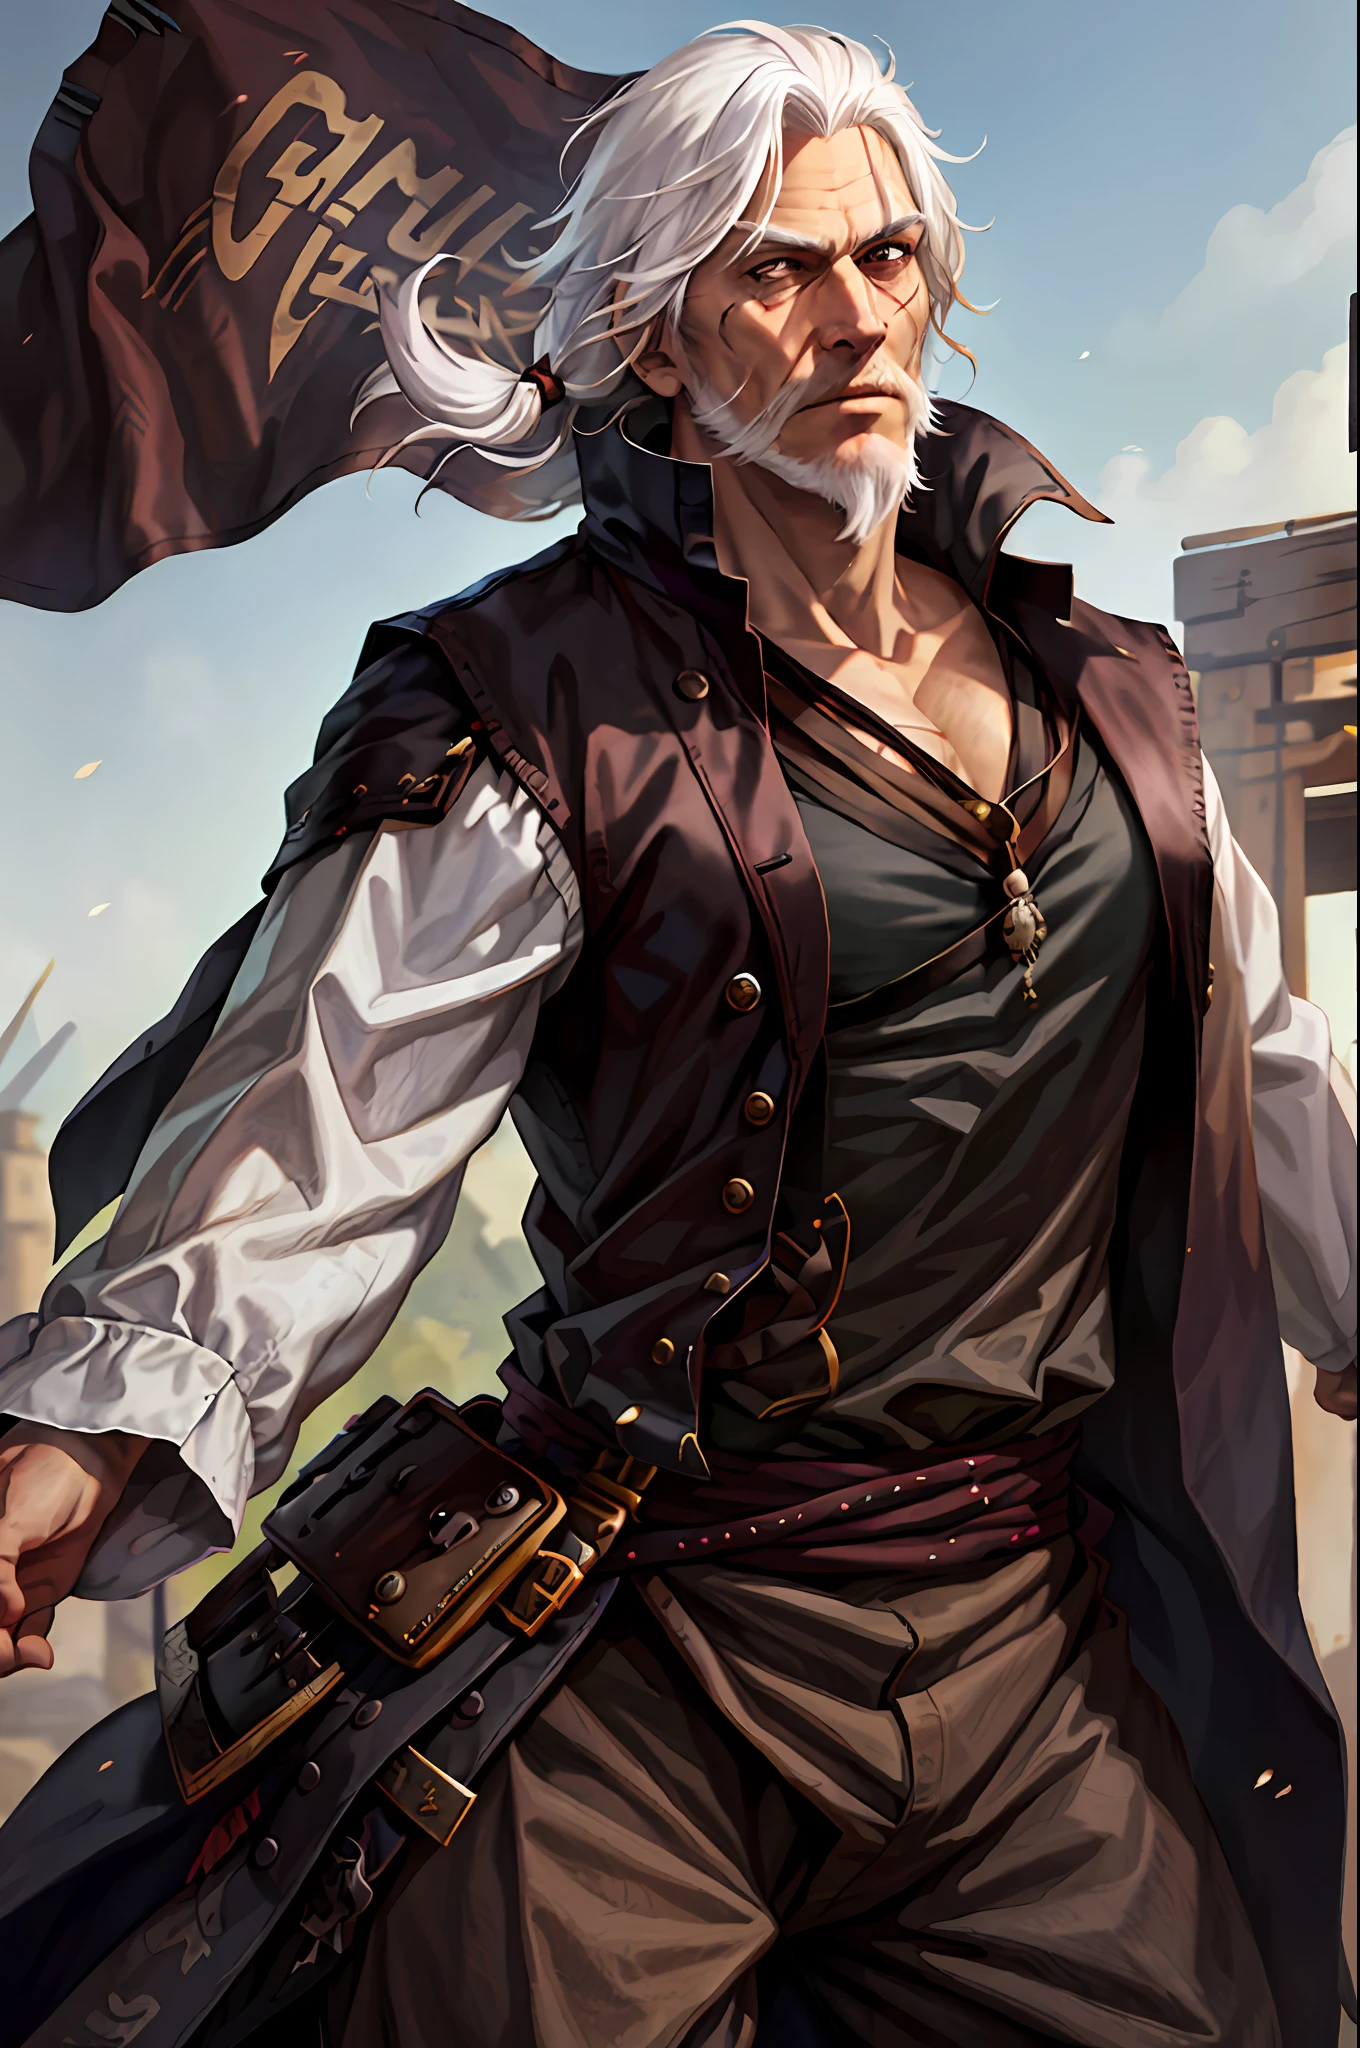 Mann, Pirat, Engländer, glattes weißes Haar, weißer Bart, Narbe am Auge, stark, Riese, relativ alt, schwarze Kleidung.